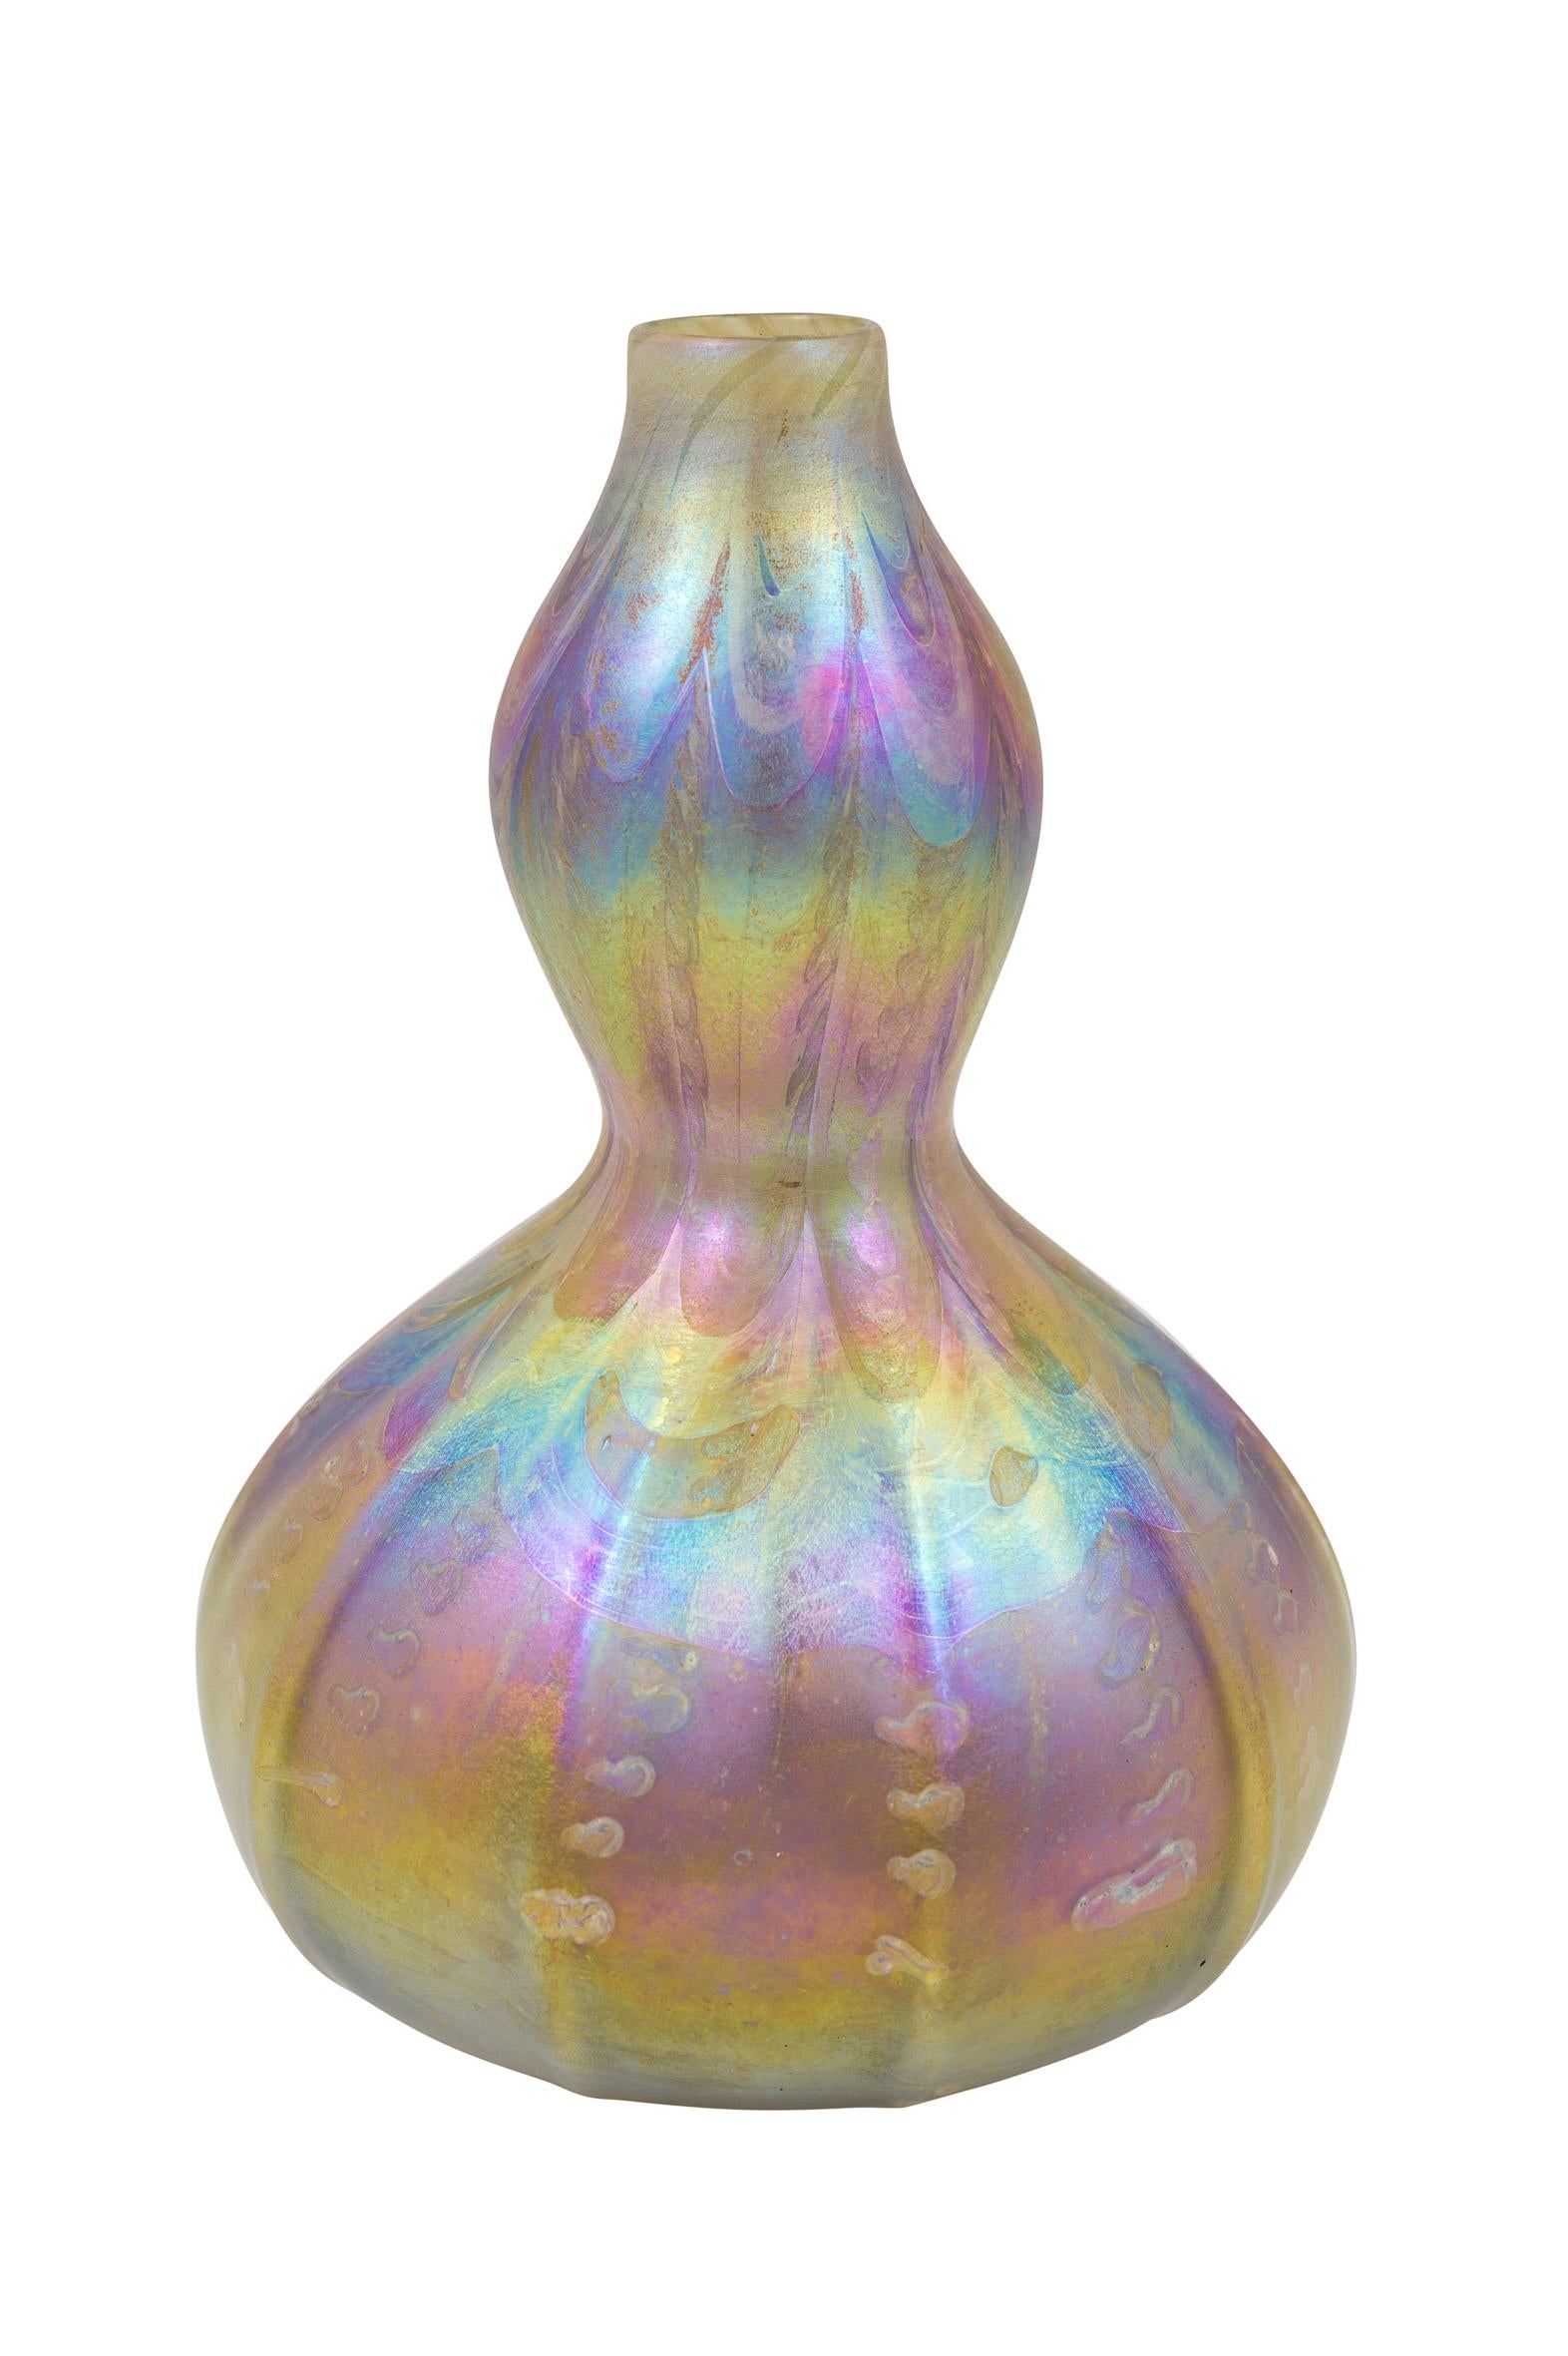 Vase en verre conçu par Louis C. Tiffany, fabriqué par les Tiffany Studios New York, 1894, signé

signé 